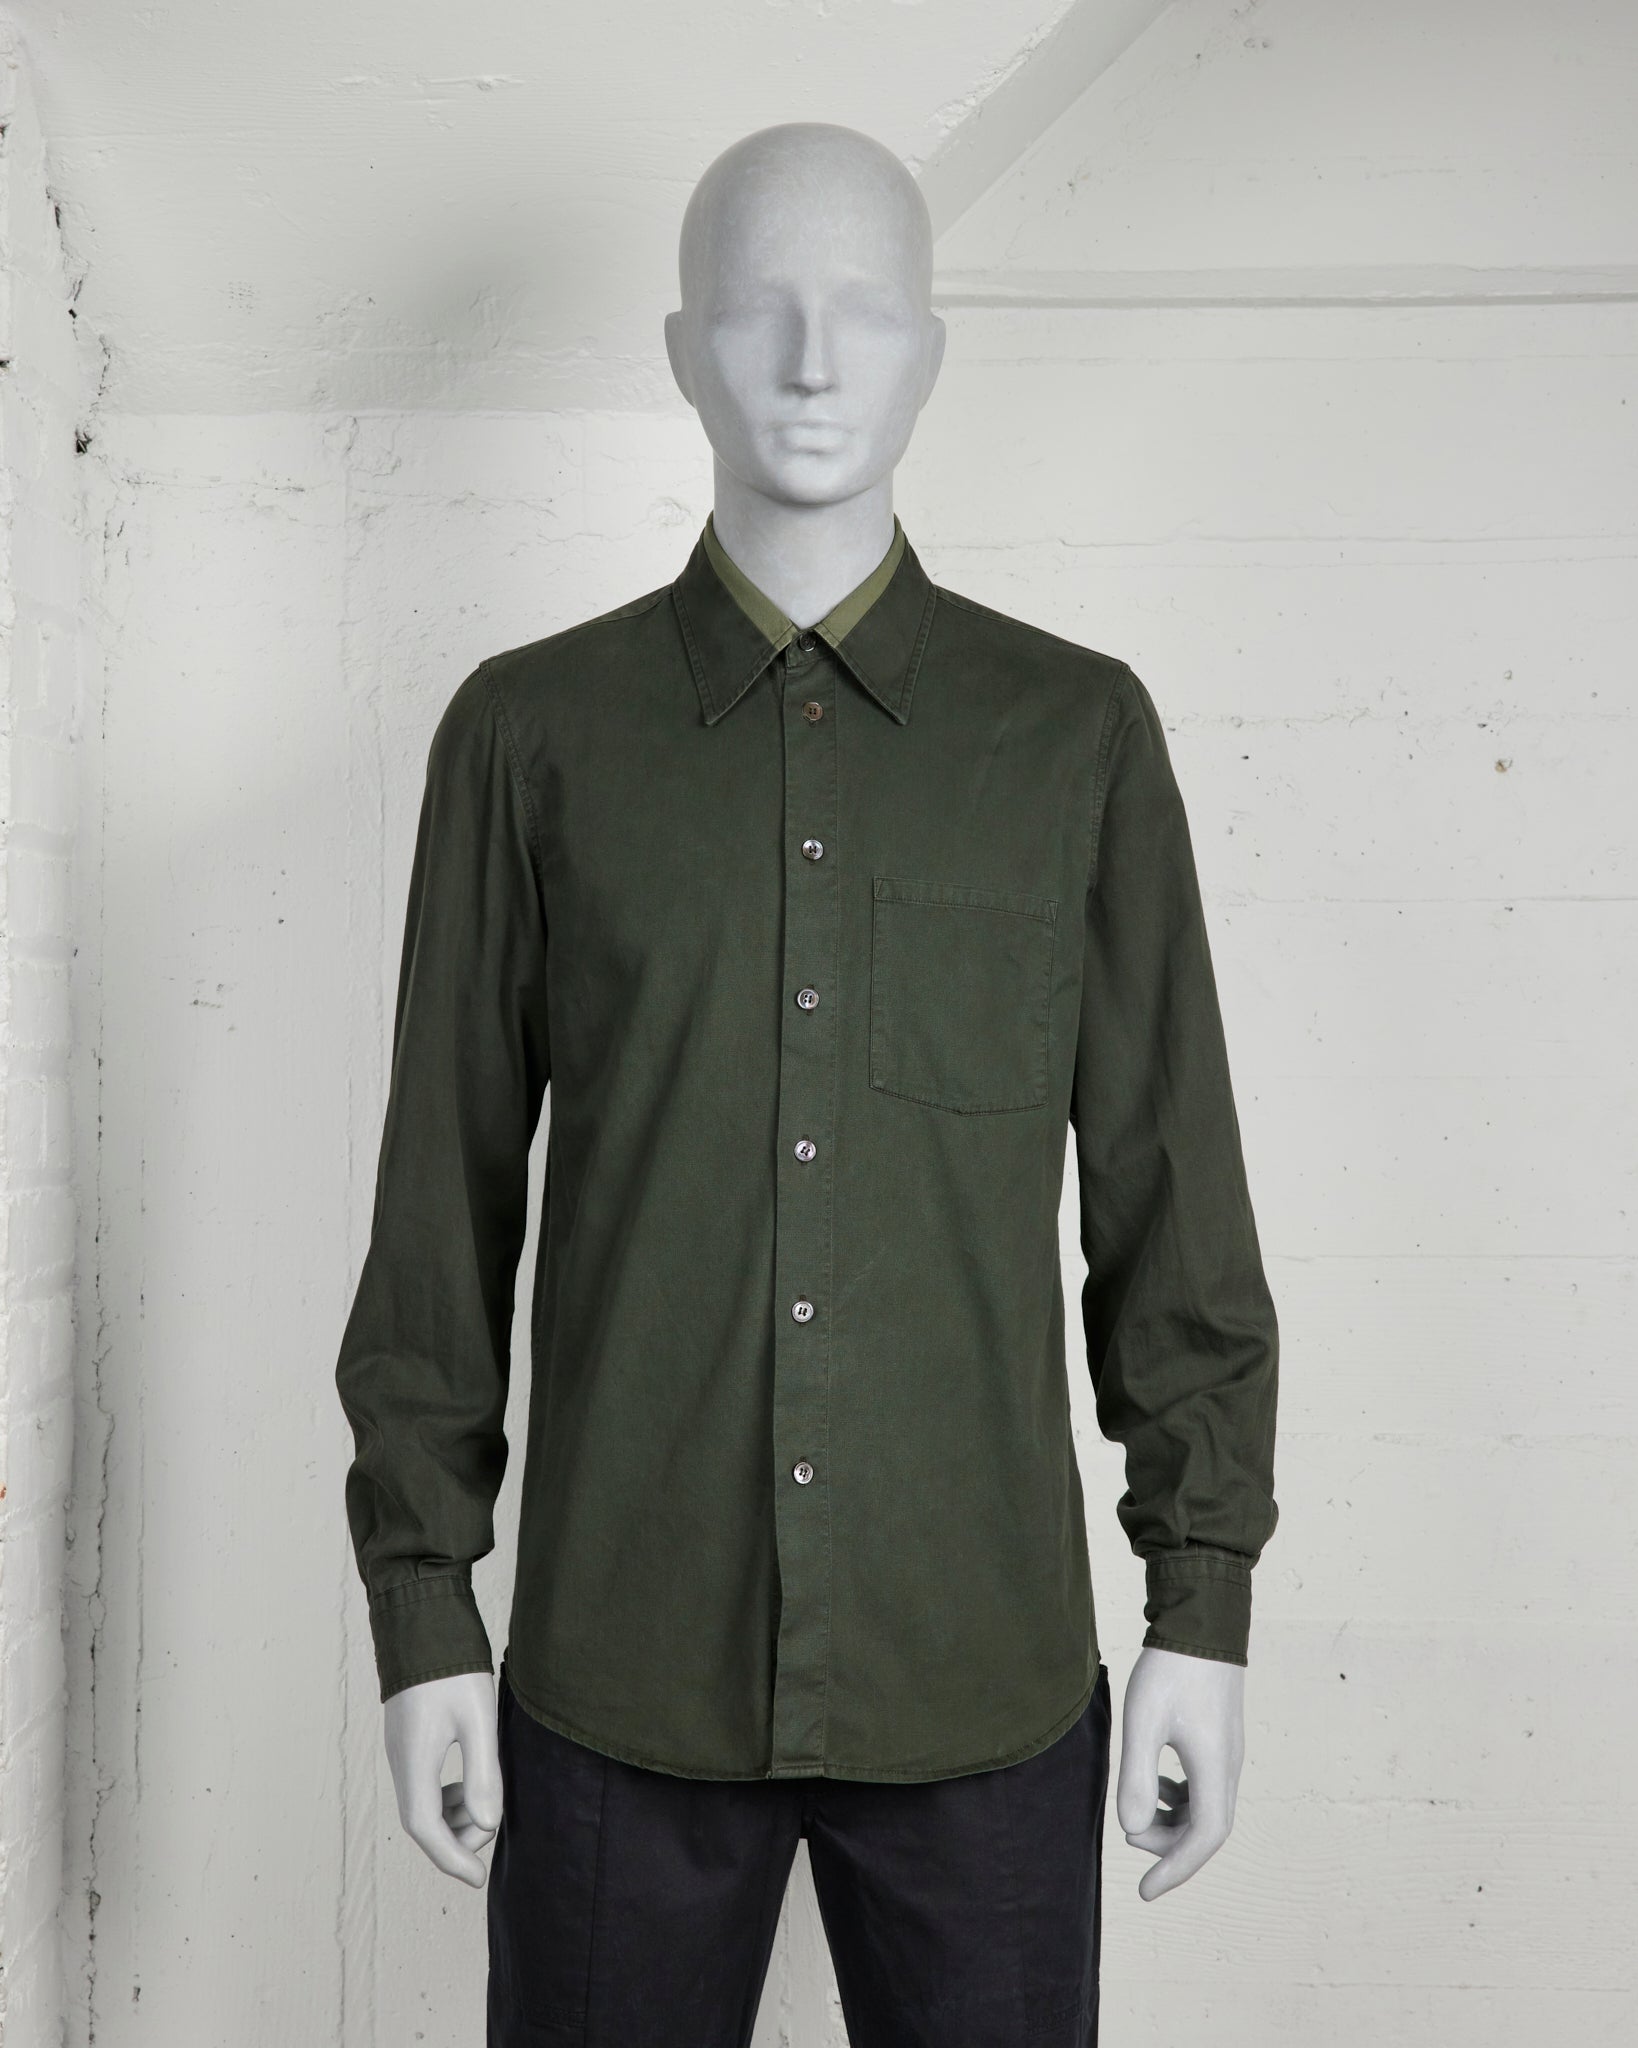 Helmut Lang Green Shirt W/ Striped Collar - SS96 - SILVER LEAGUE